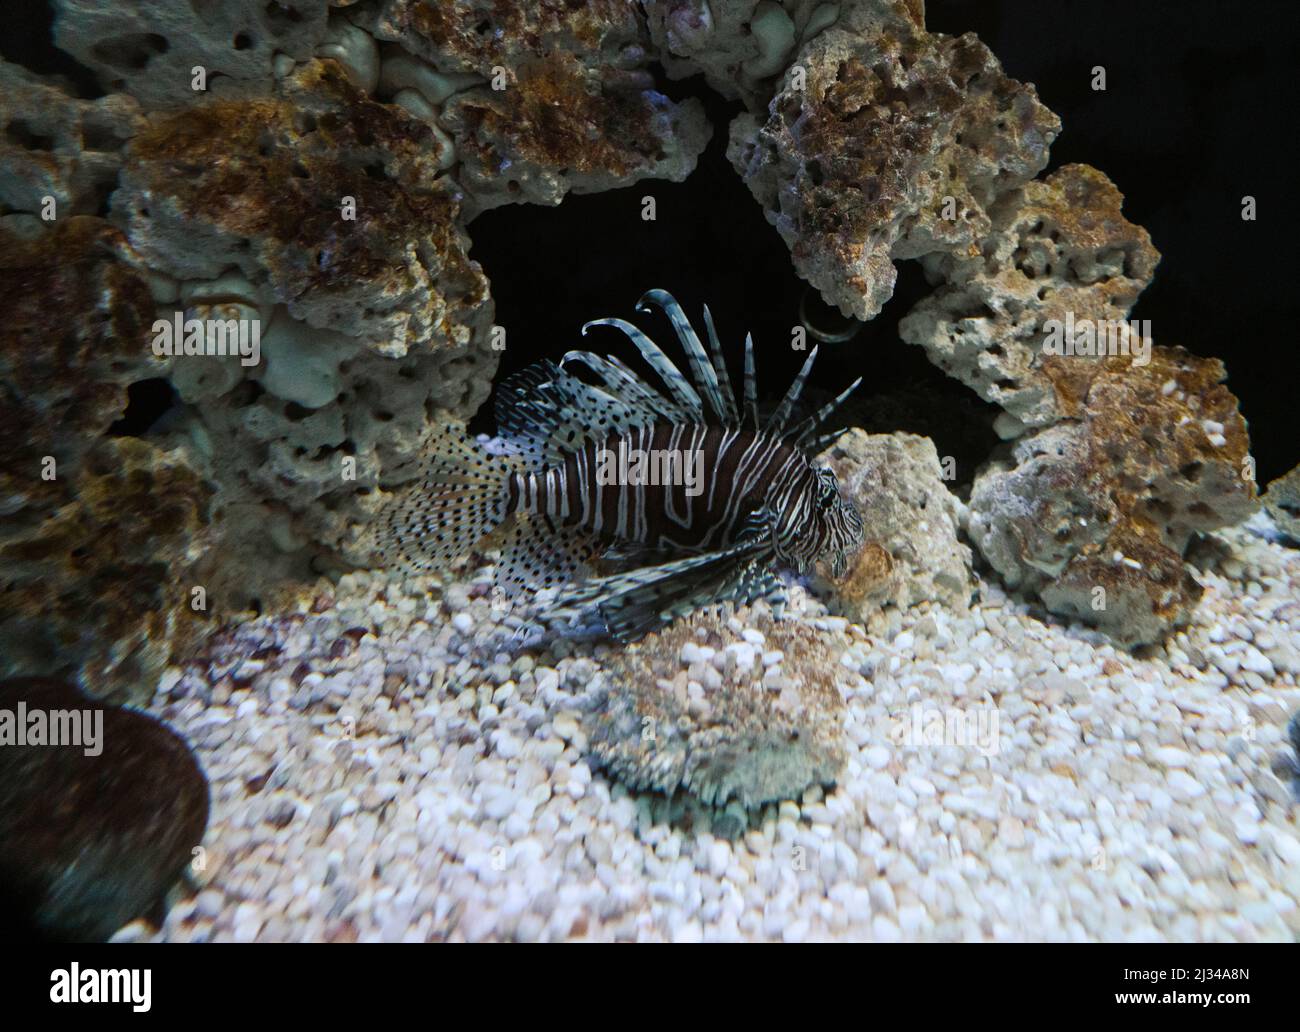 Le poisson Lion dans un aquarium d'eau salée, une espèce envahissante dans l'océan Atlantique. Banque D'Images